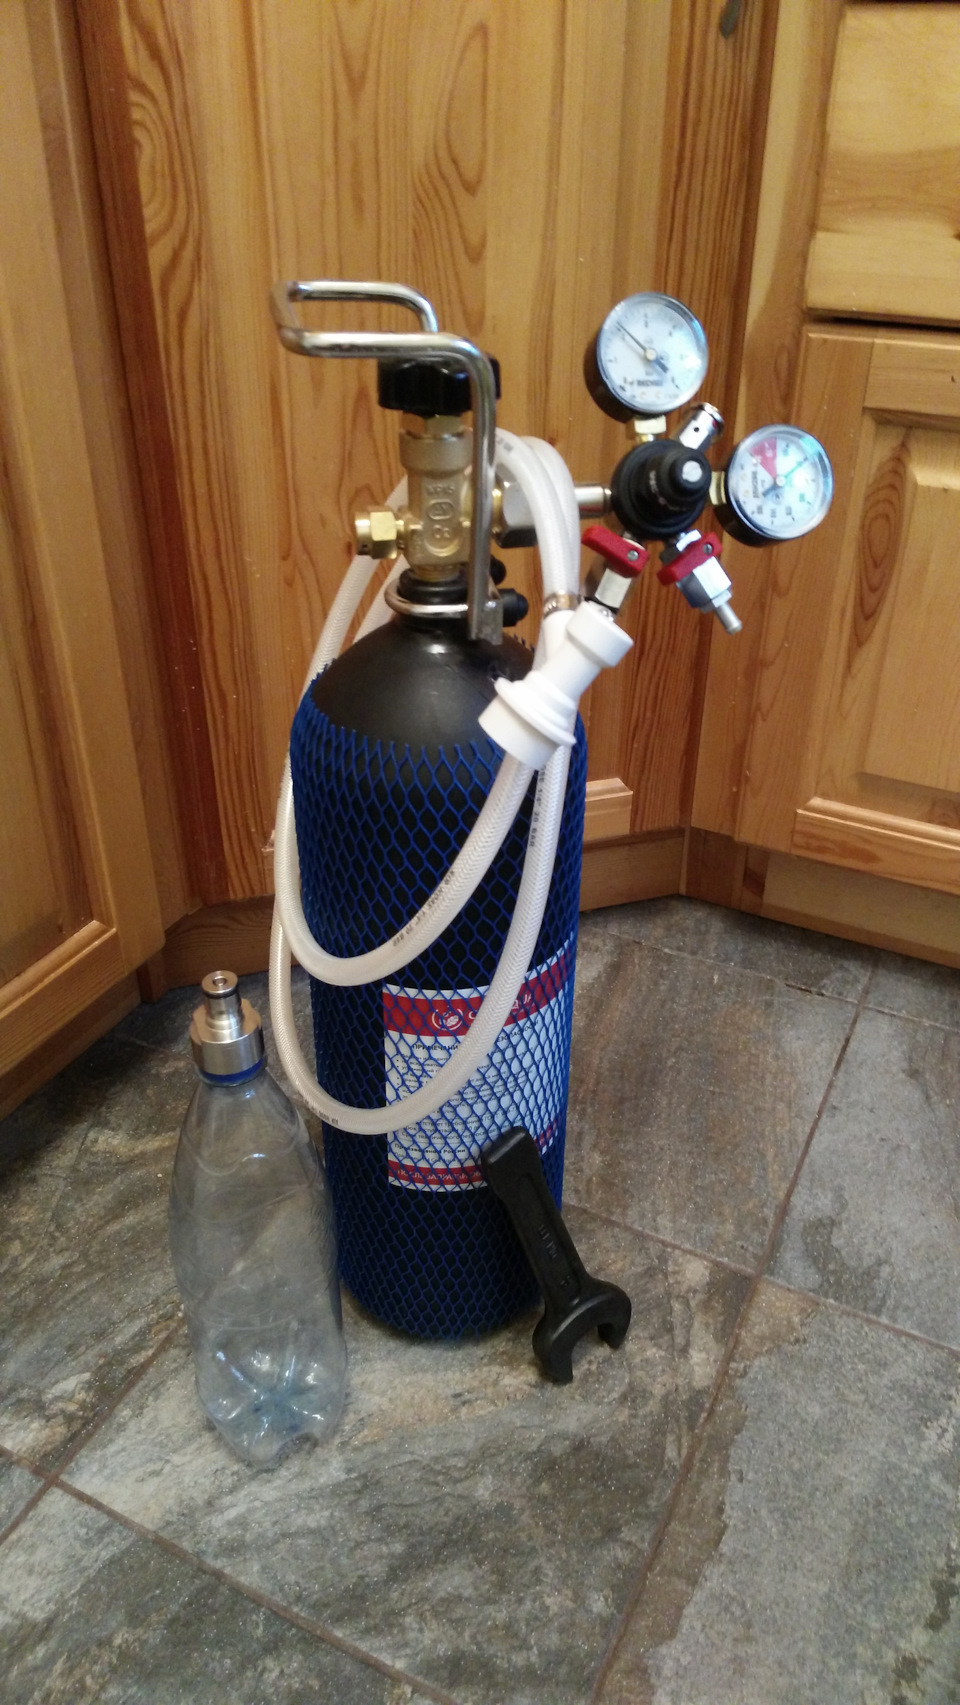 «Как сделать газированную воду в домашних условиях?» — Яндекс Кью